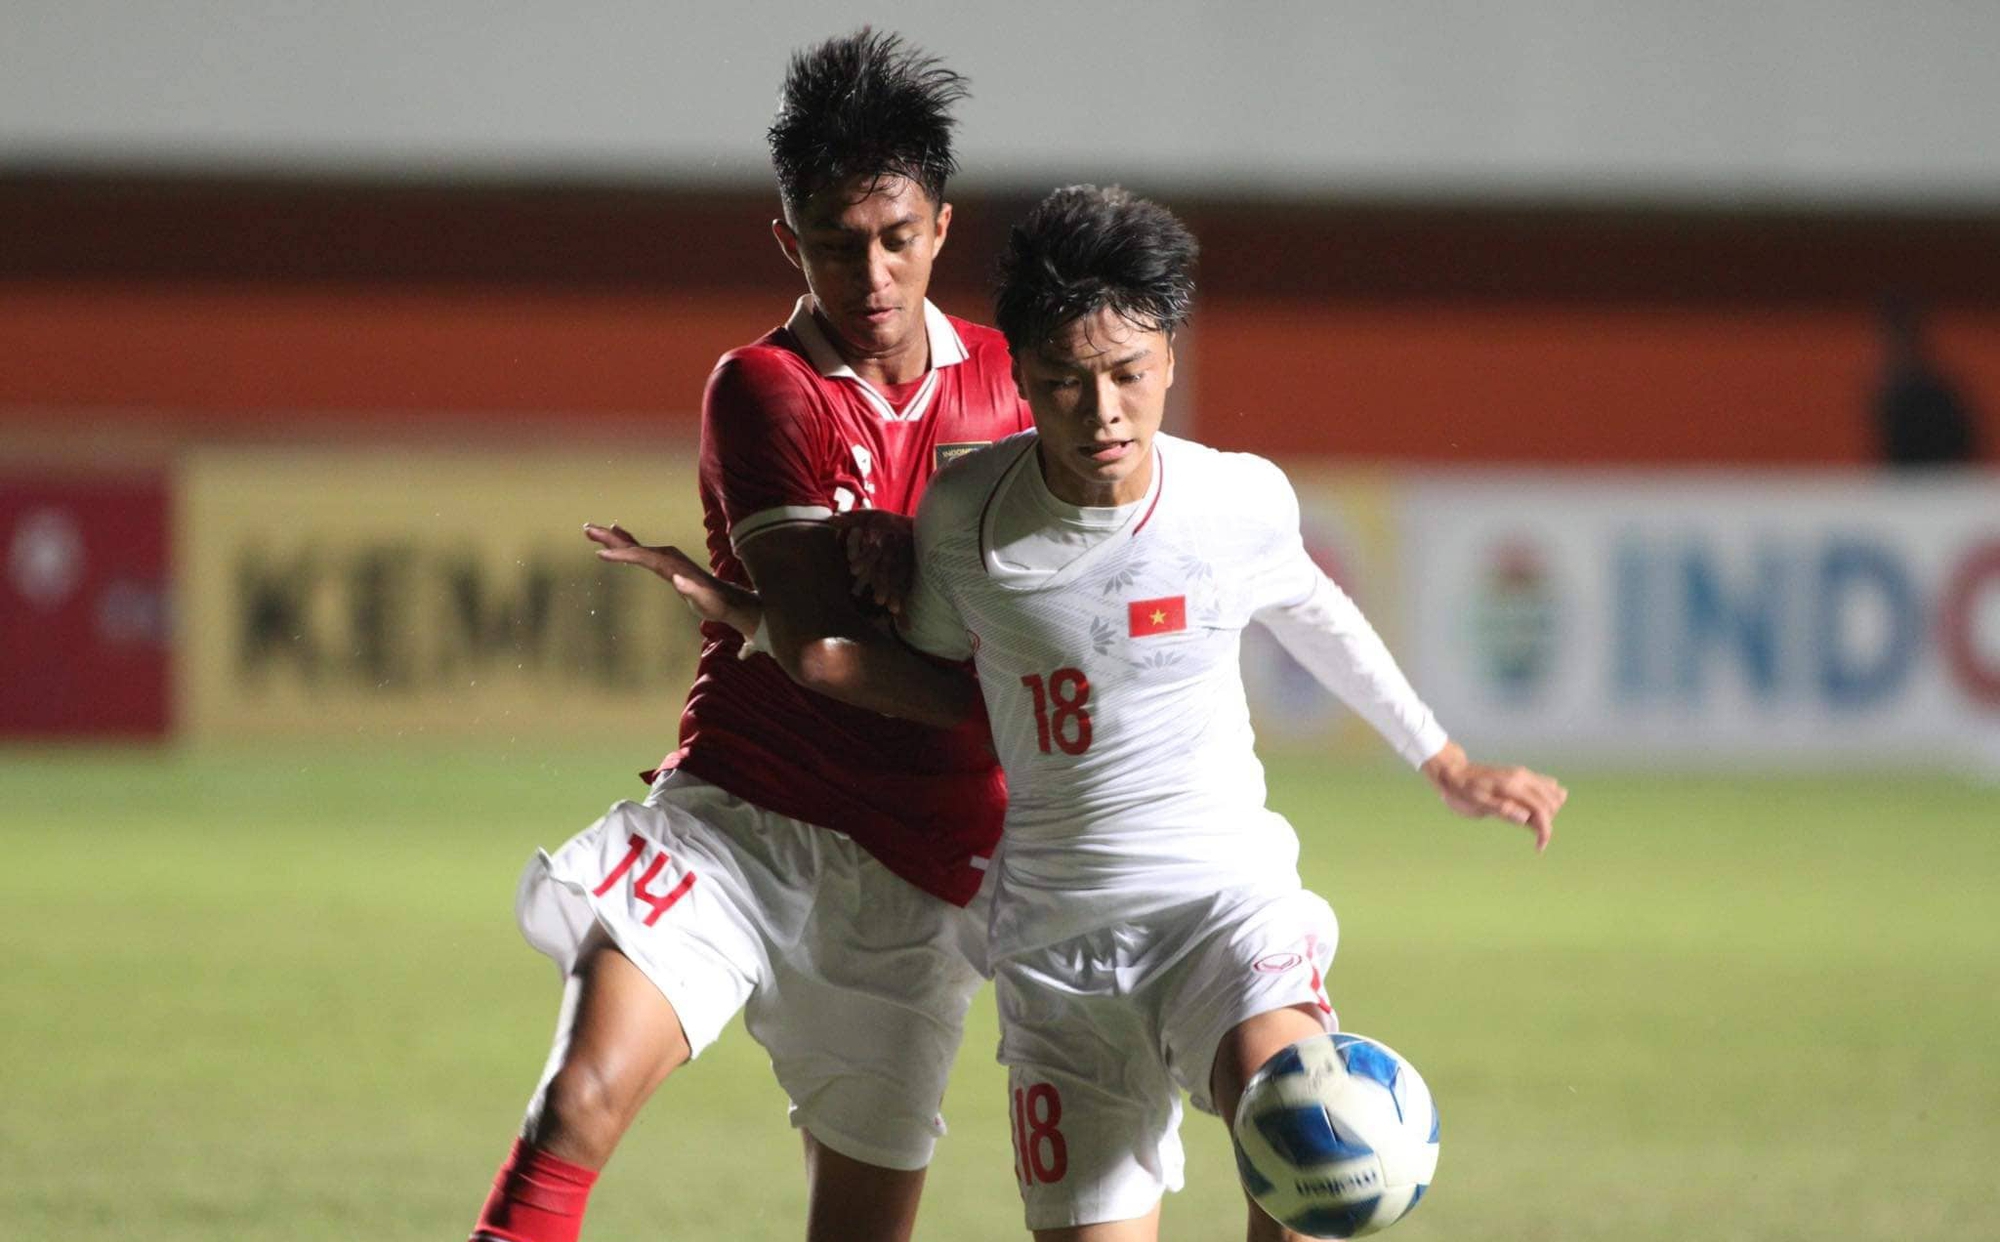 Chịu áp lực tới ngạt thở, cầu thủ U16 Indonesia bật khóc khi chiến thắng U16 Việt Nam